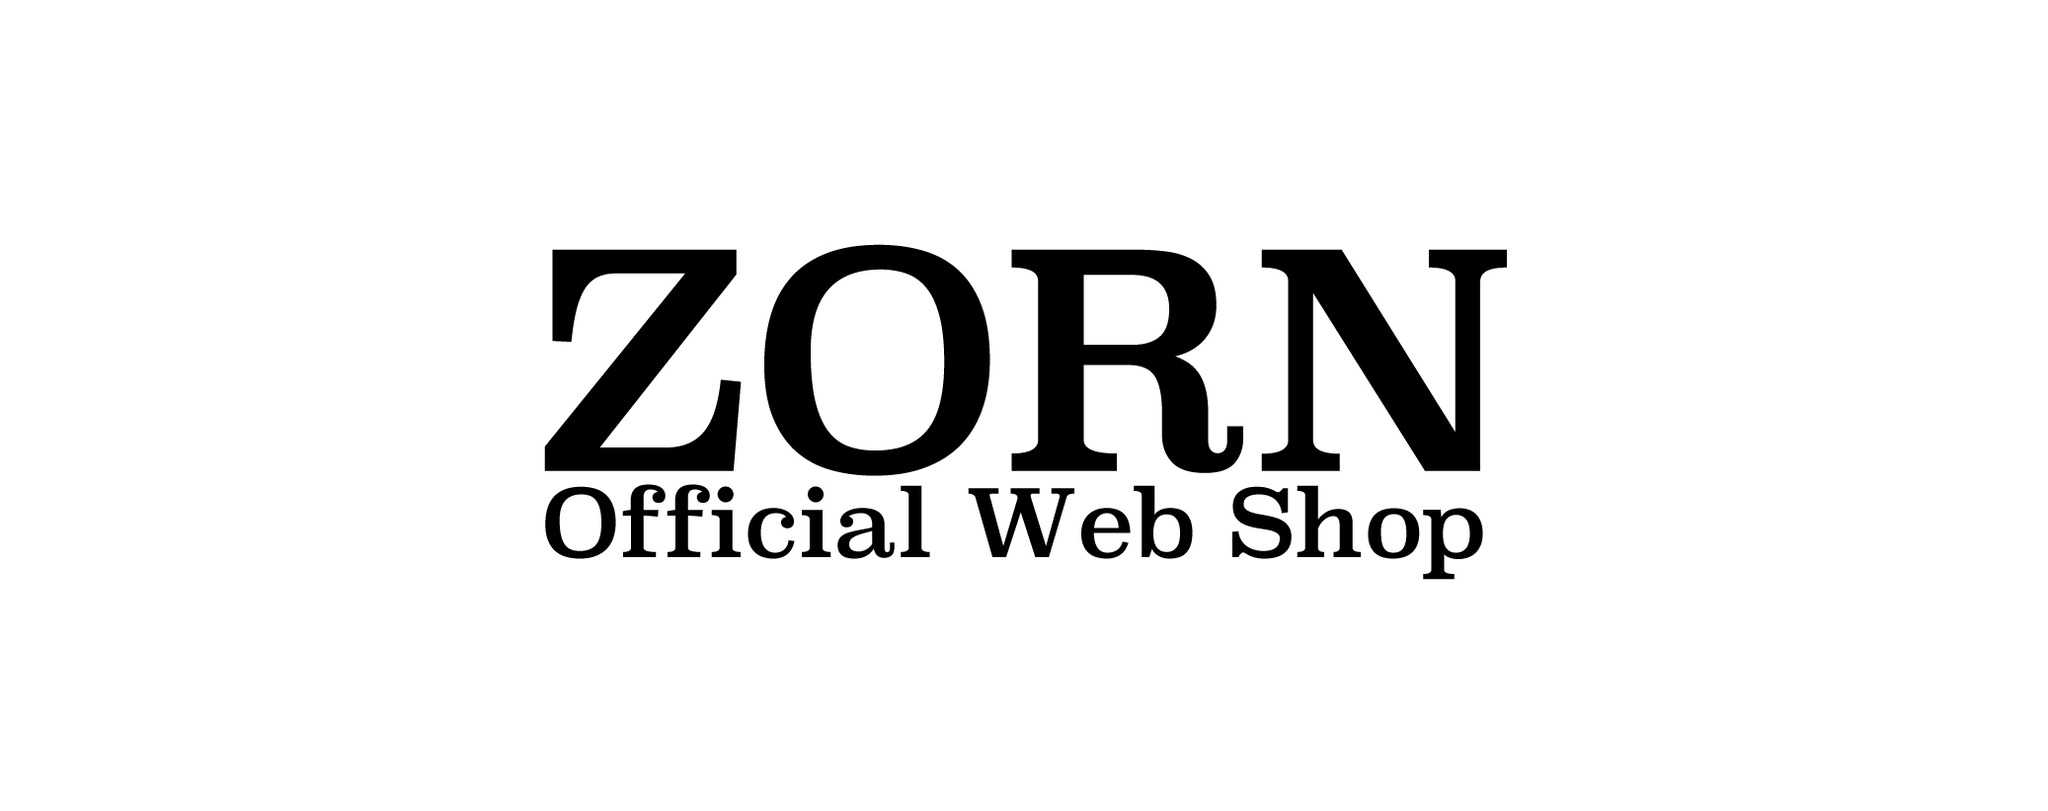 ZORN Official Web Shop